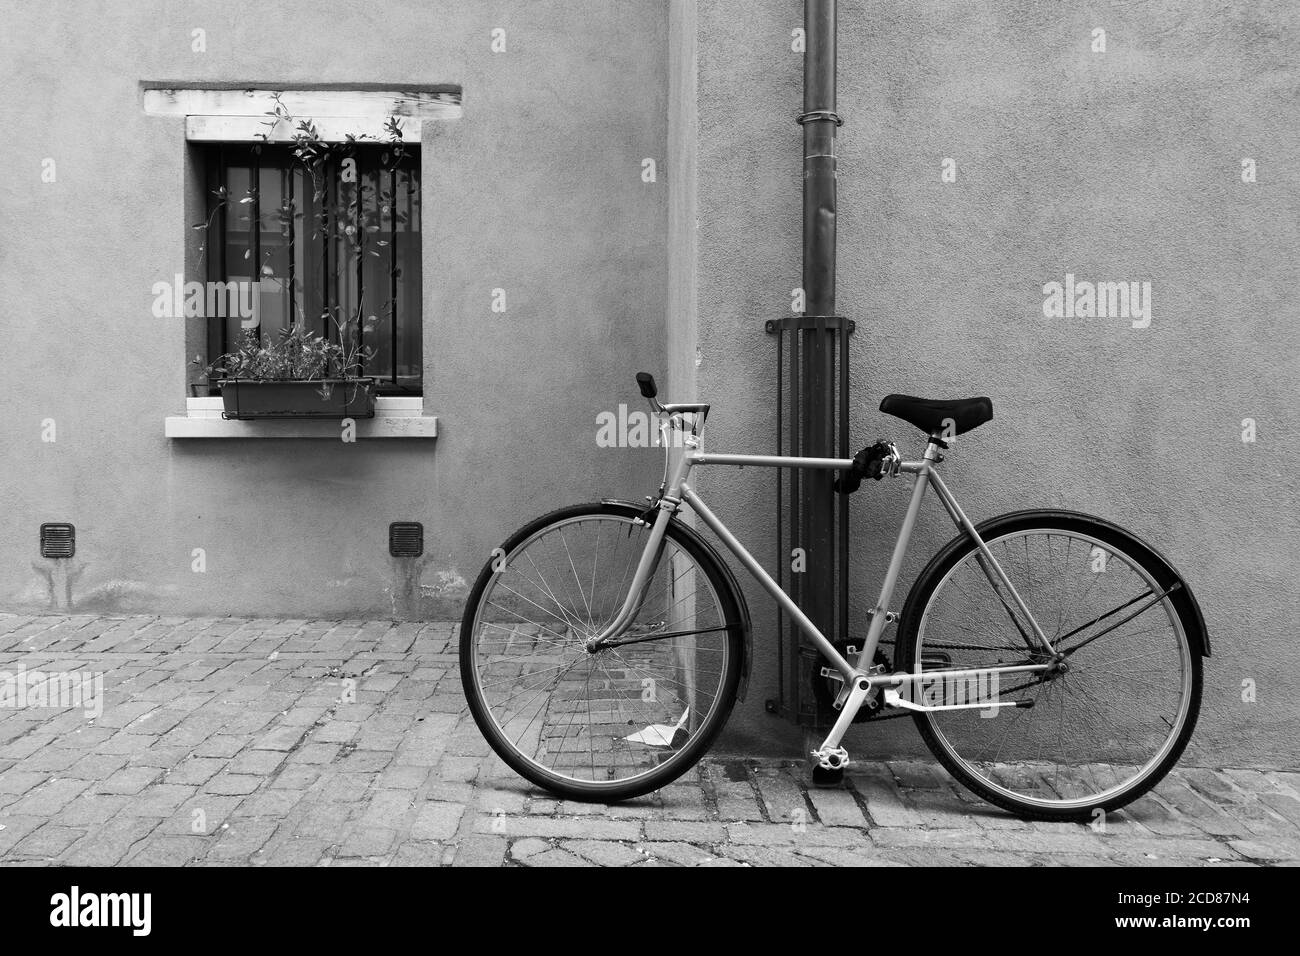 Biciclette parcheggiate in strada a Rimini, Italia. Fotografia urbana in bianco e nero Foto Stock